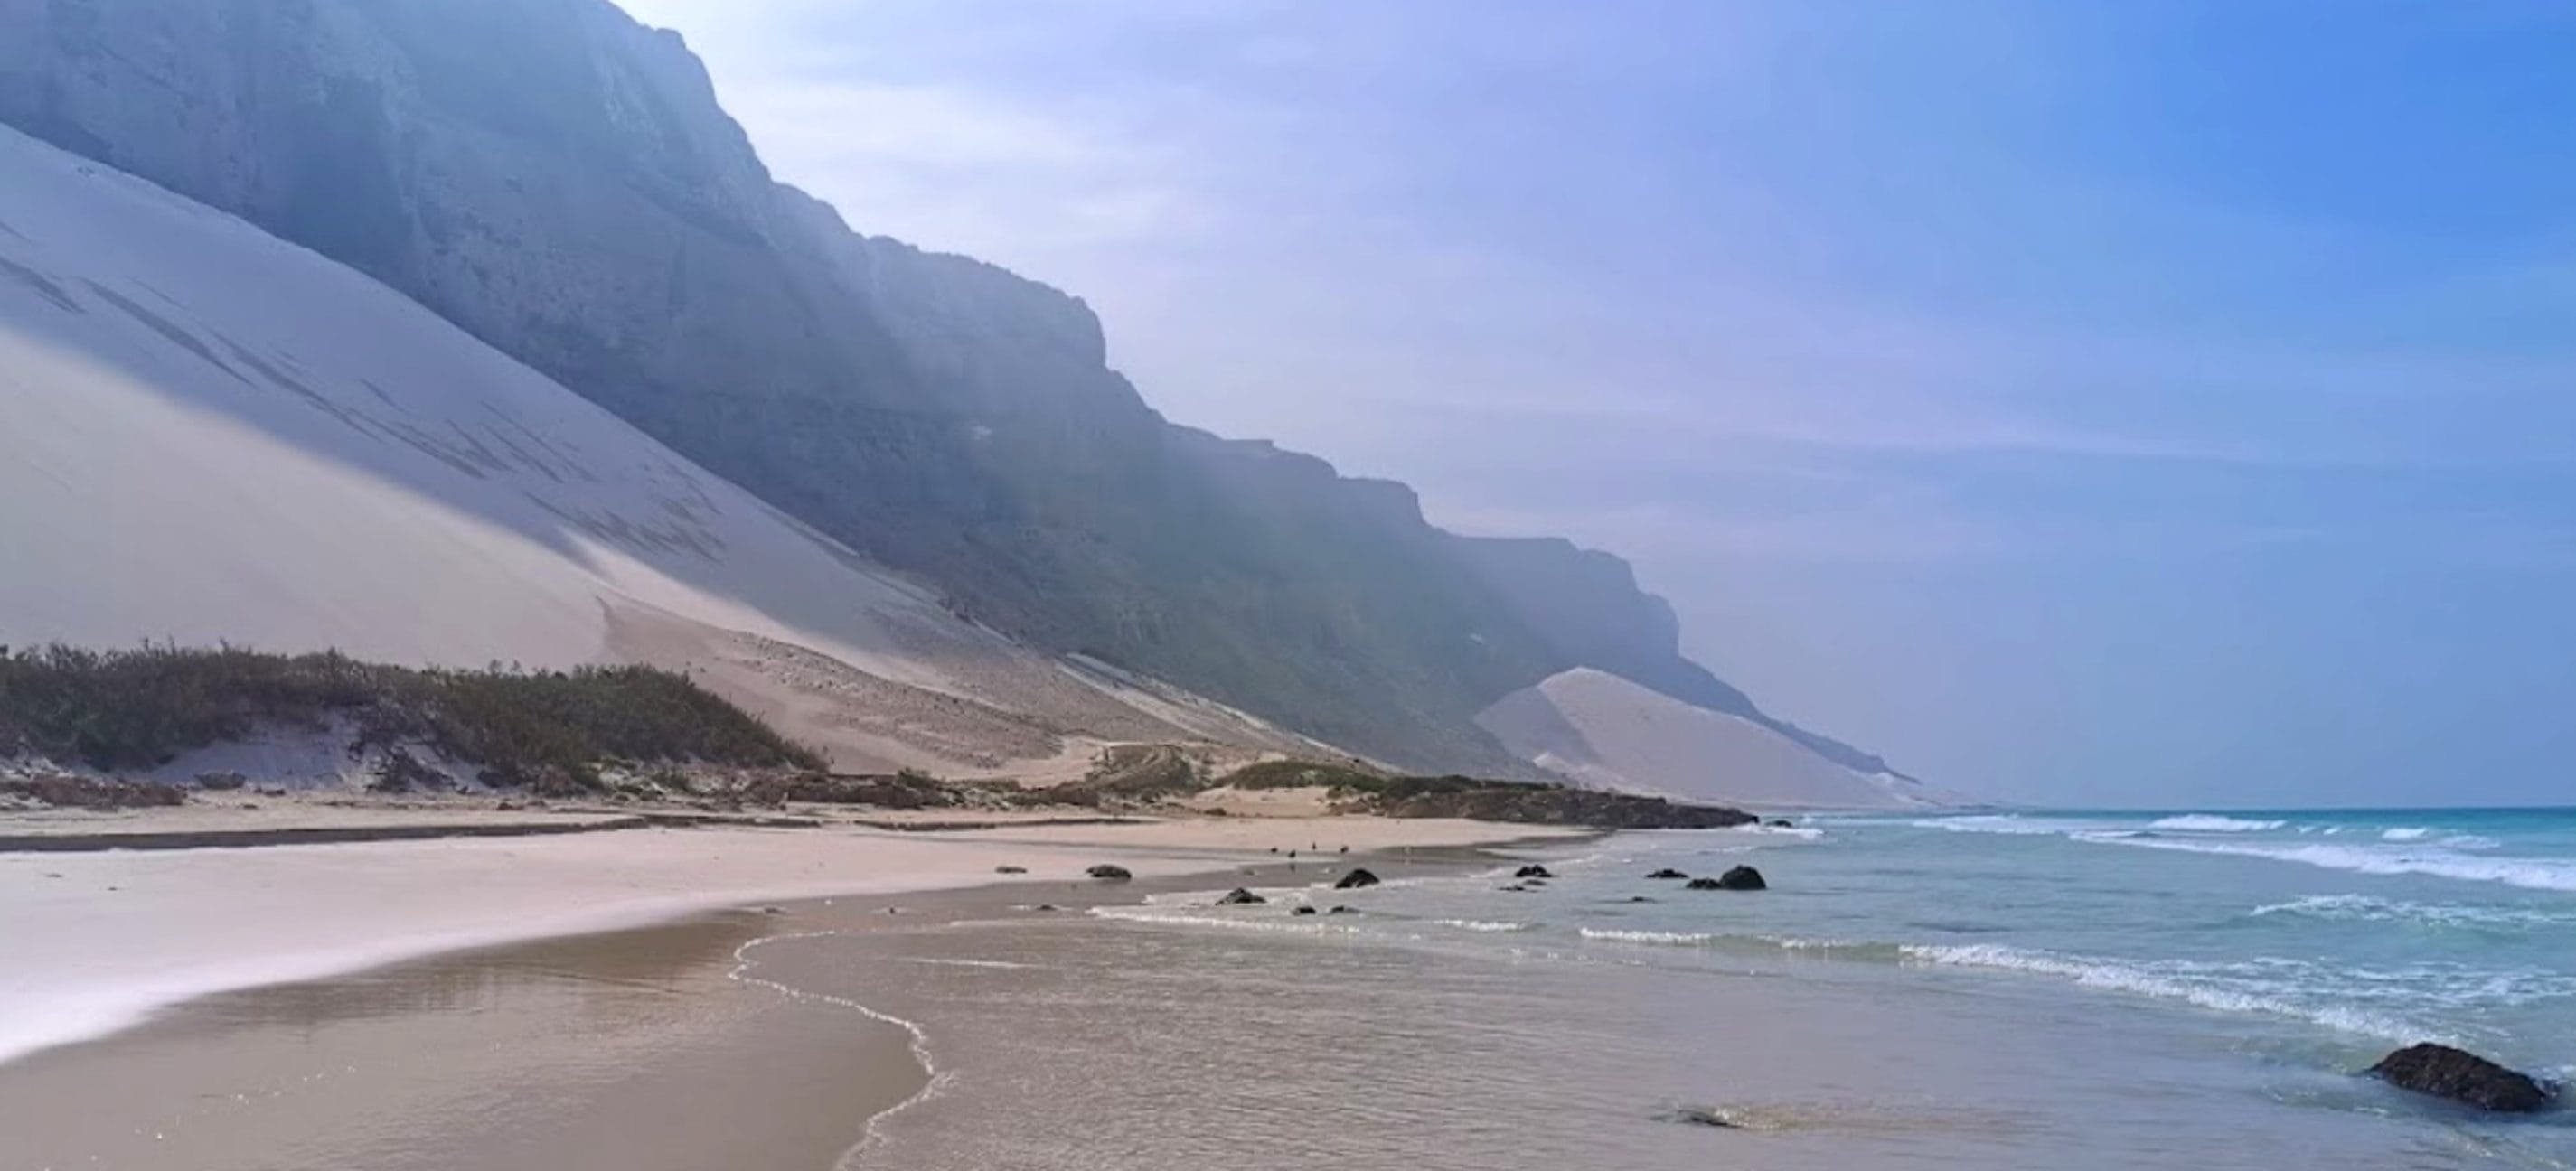 كثبان الرمال البيضاء في شاطئ أرير, سقطرى